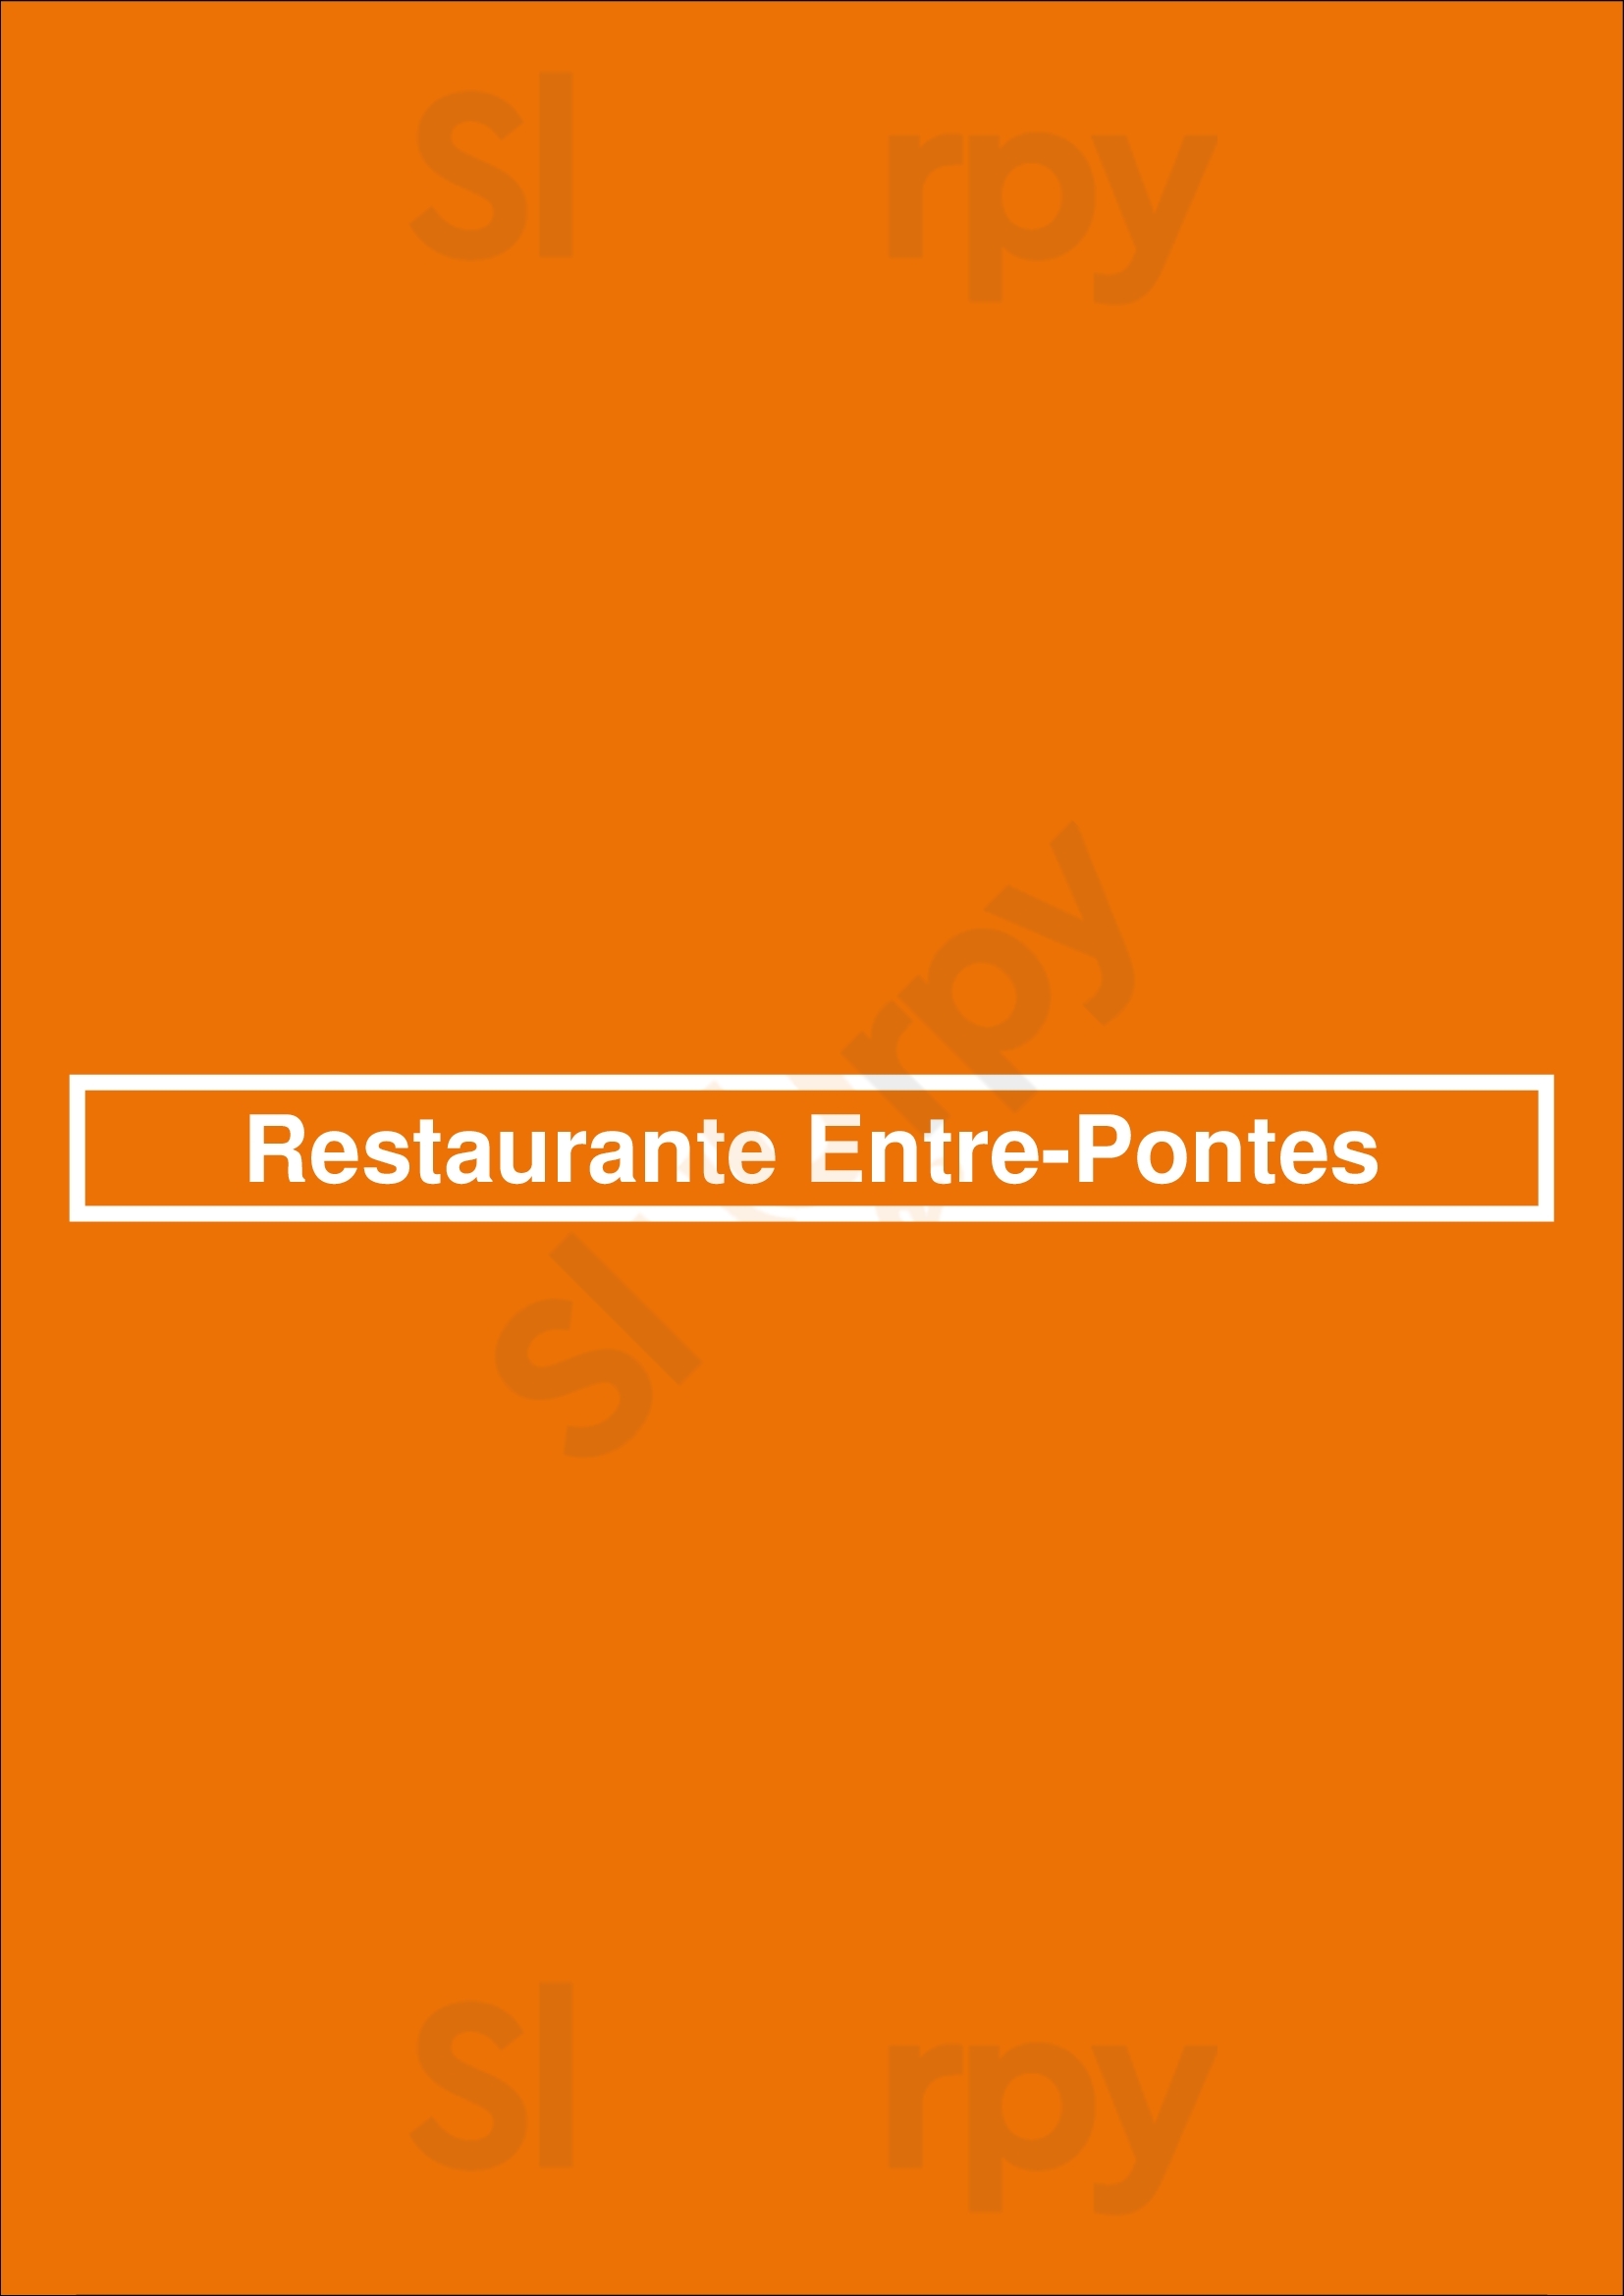 Restaurante Entre-pontes Porto Menu - 1